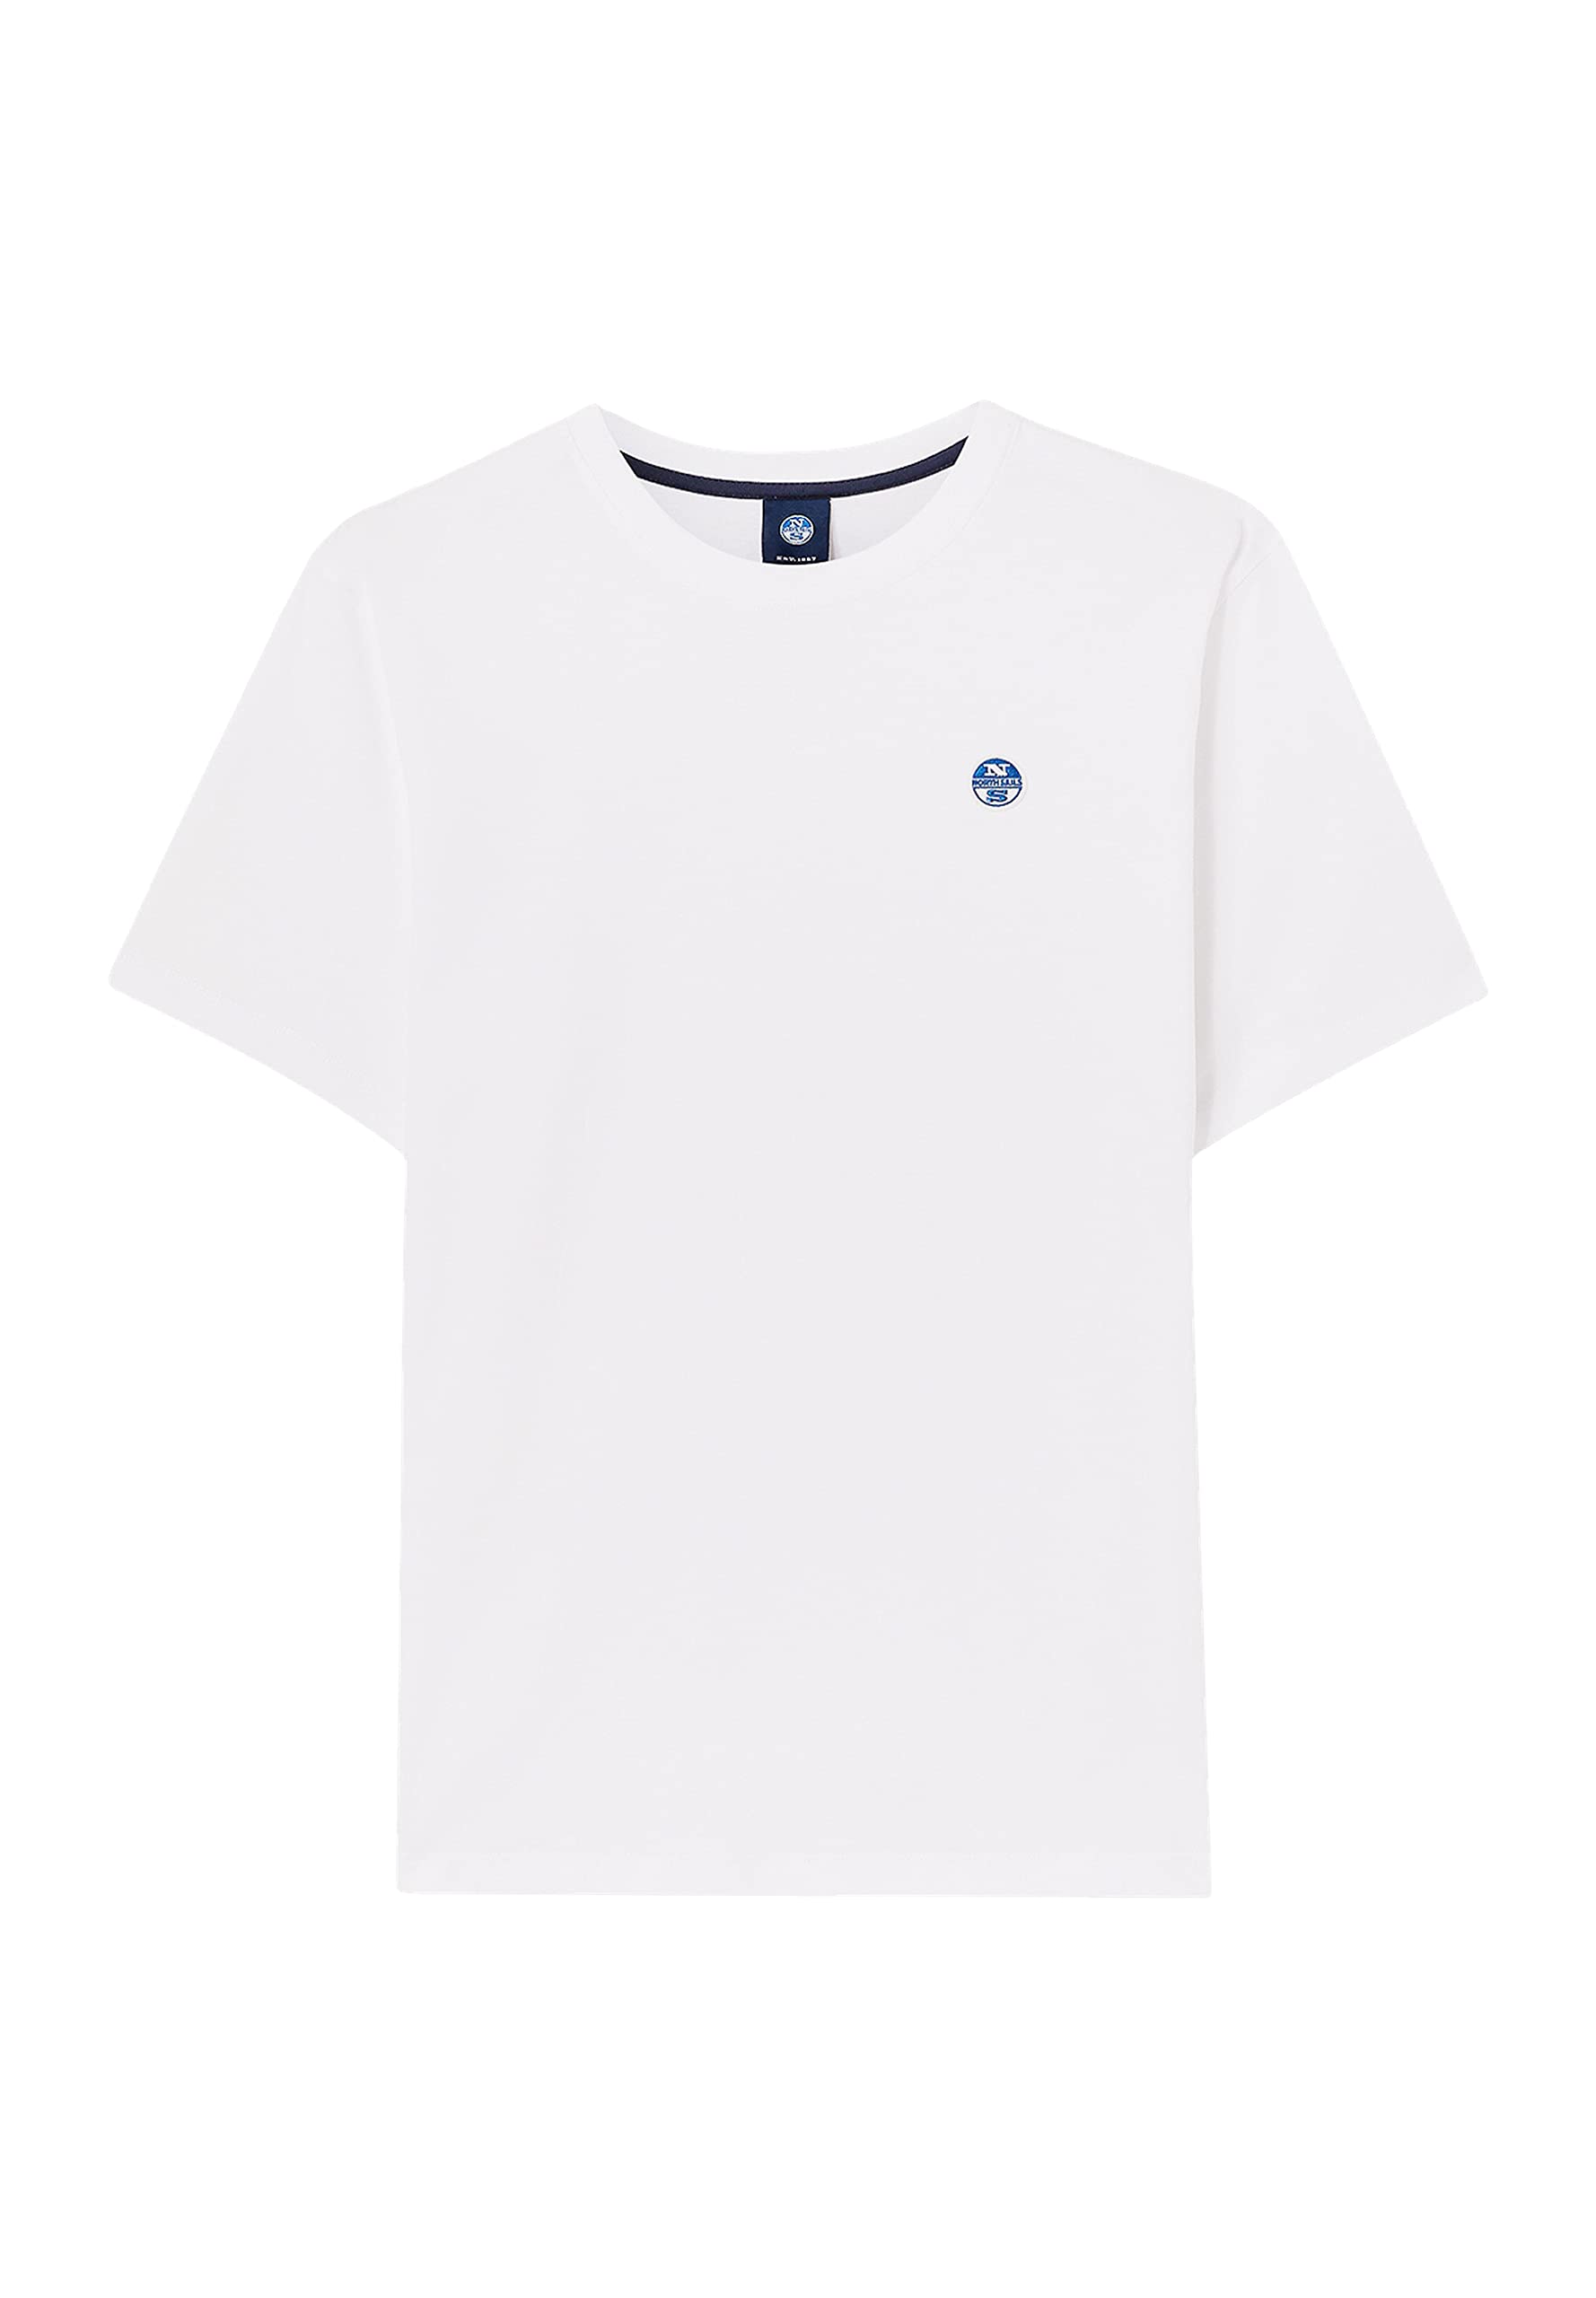 NORTH SAILS Herren S/S T-Shirt W/Logo, weiß, 58